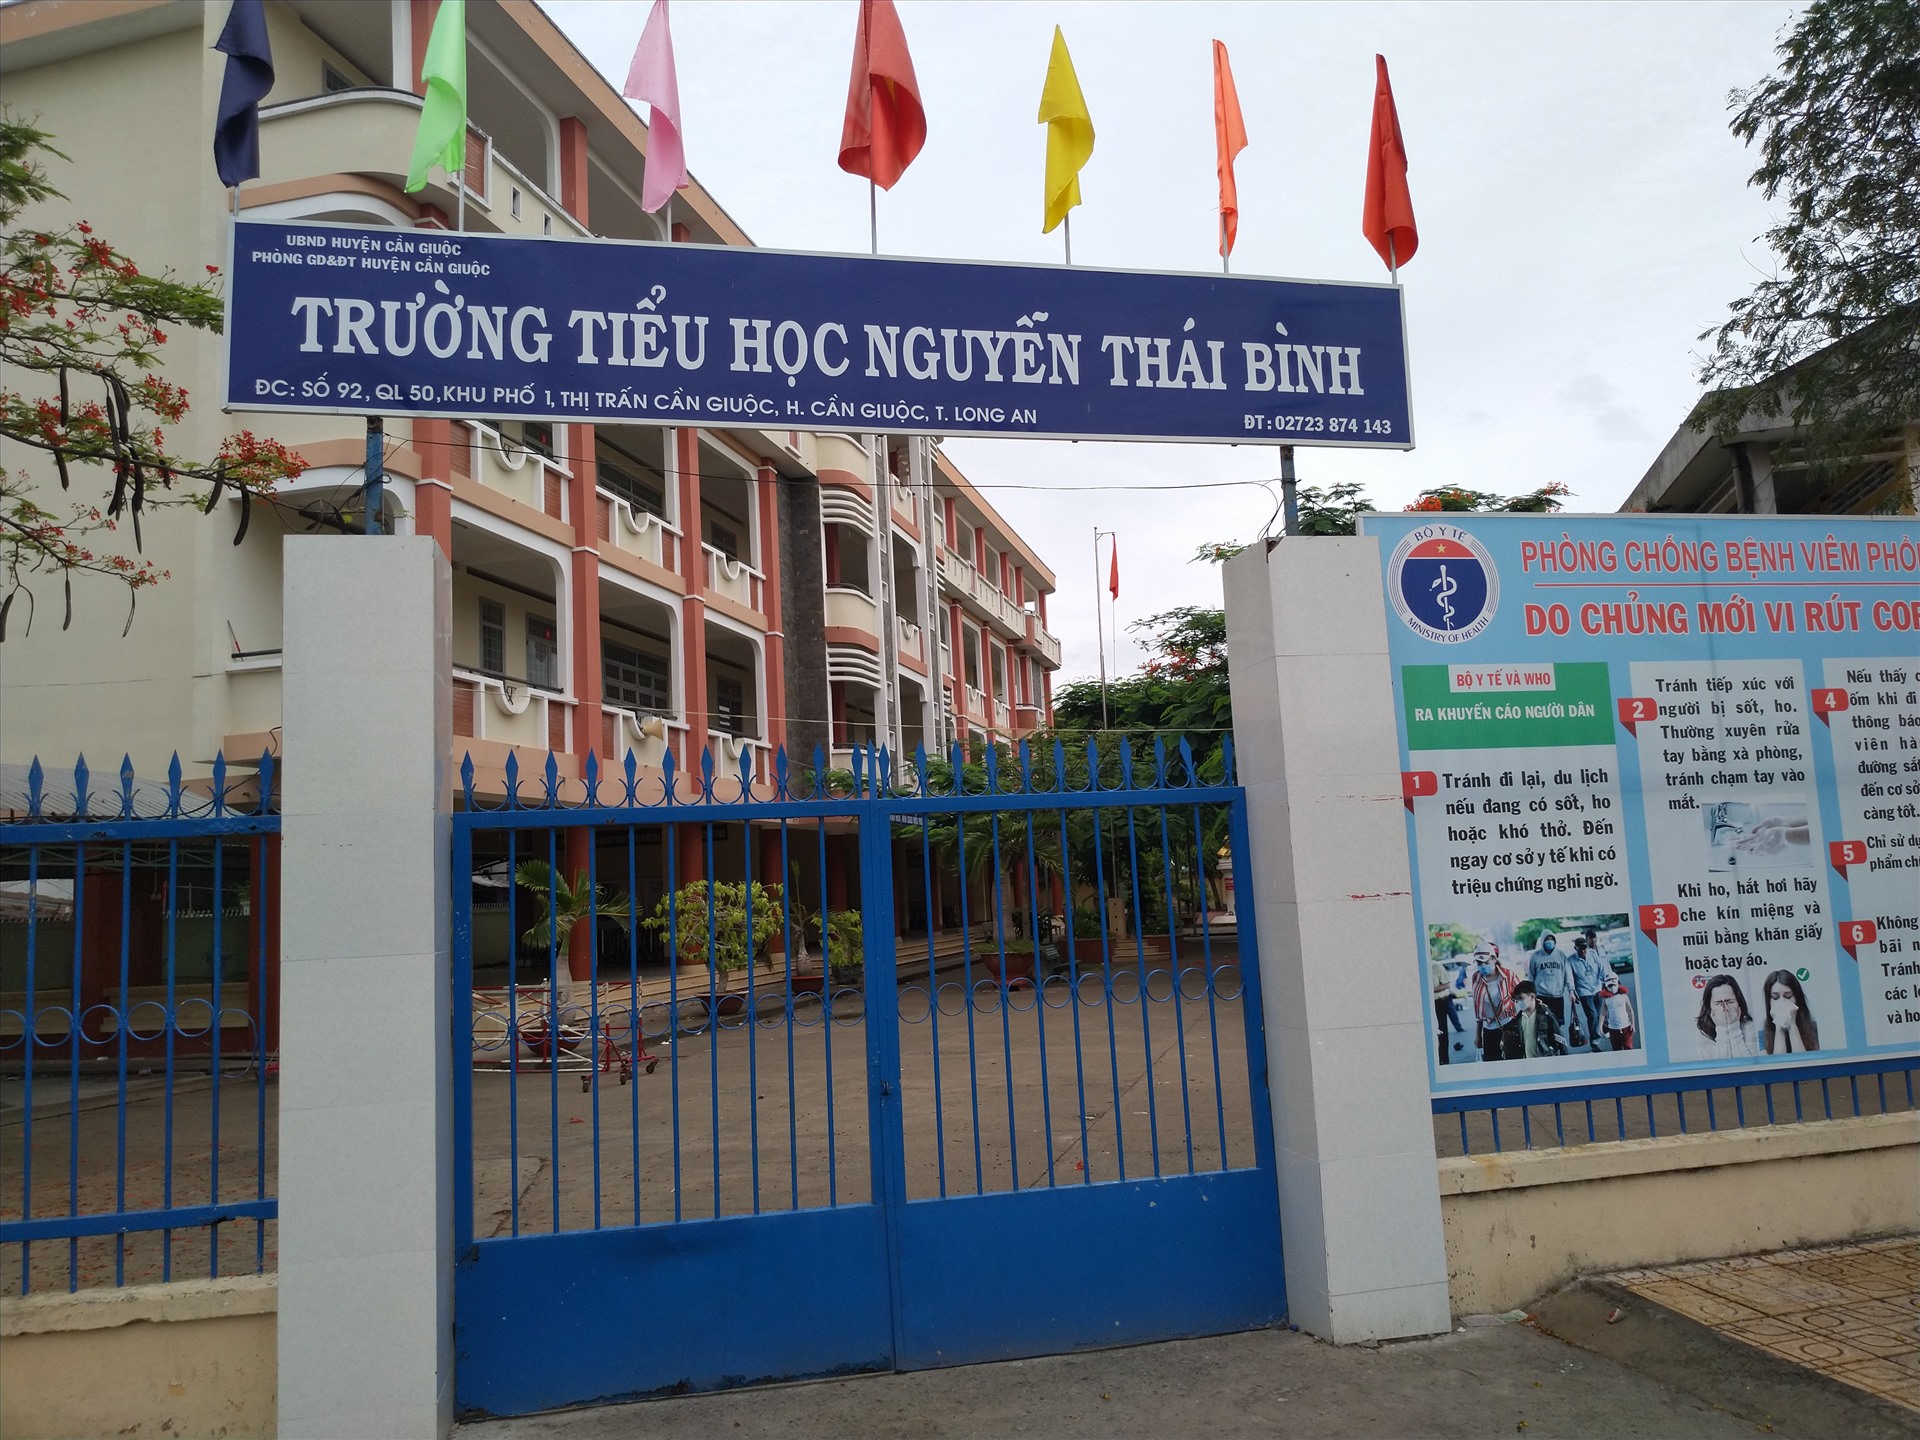 Trường Tiểu học mang tên Nguyễn Thái Bình, nơi anh Bình từng học thời nhỏ. Ảnh: K.Q